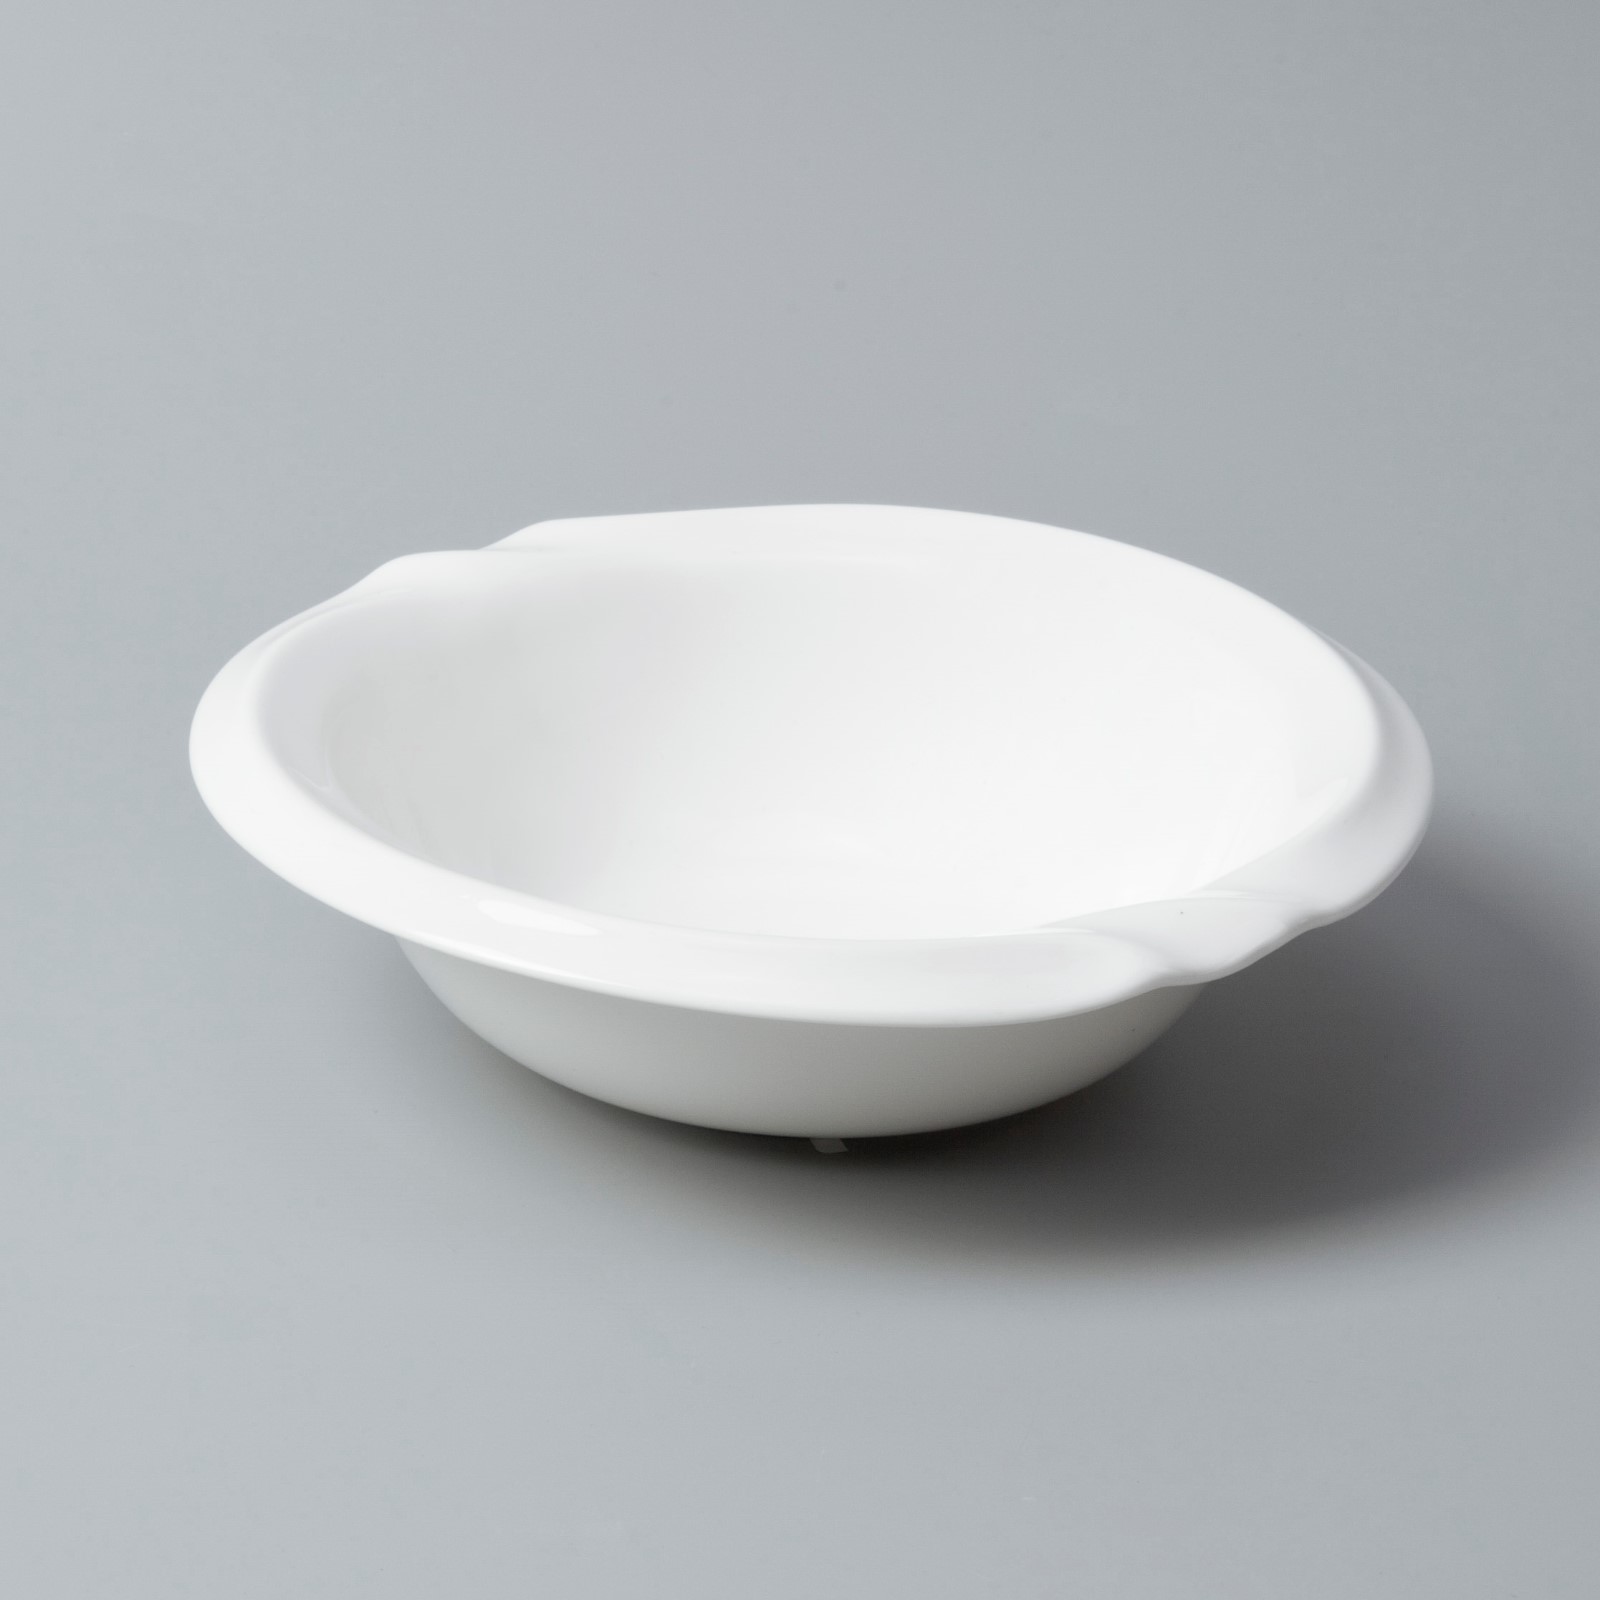 Two Eight Brand porcelain color custom white porcelain tableware